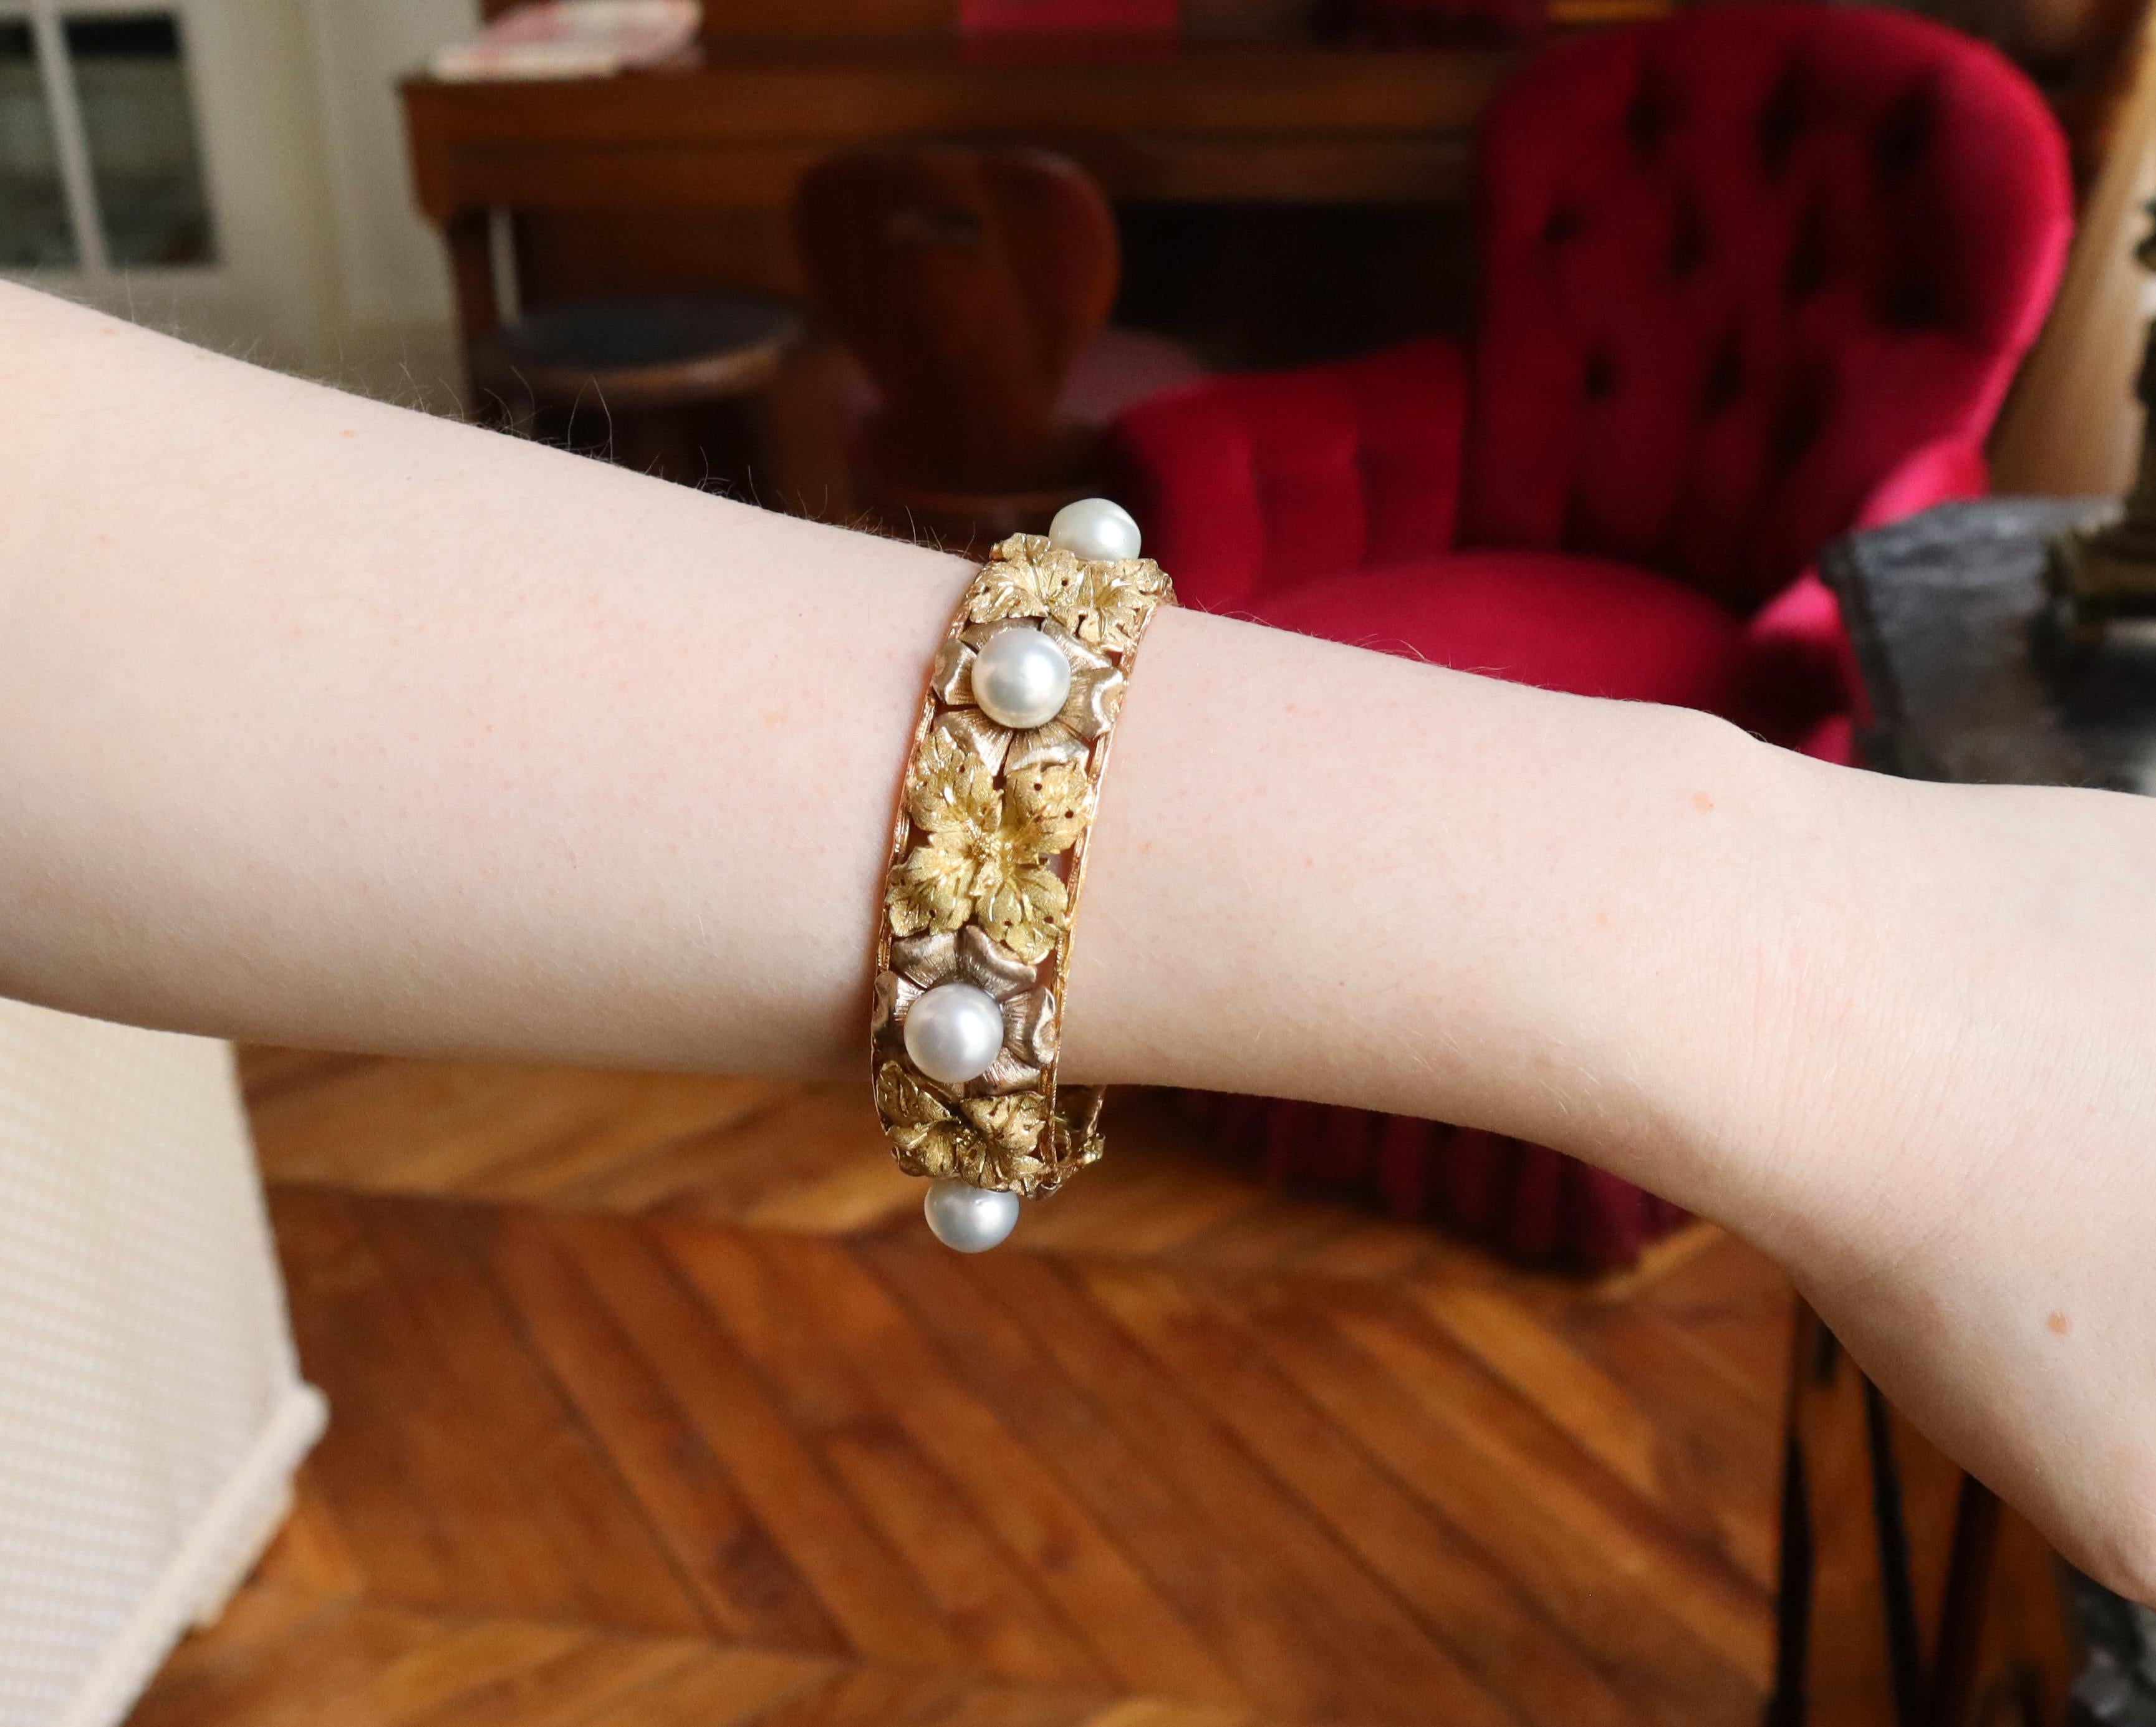 BUCCELLATI Armband in drei Goldarten: Gelbgold, Weißgold, Roségold mit Blattmotiven und 6 grauen Perlen von ca. 1 cm Durchmesser.
Armband mit ziselierten Blumen aus Gelbgold, abwechselnd mit ziselierten Blumen aus Graugold von Amati, unterbrochen